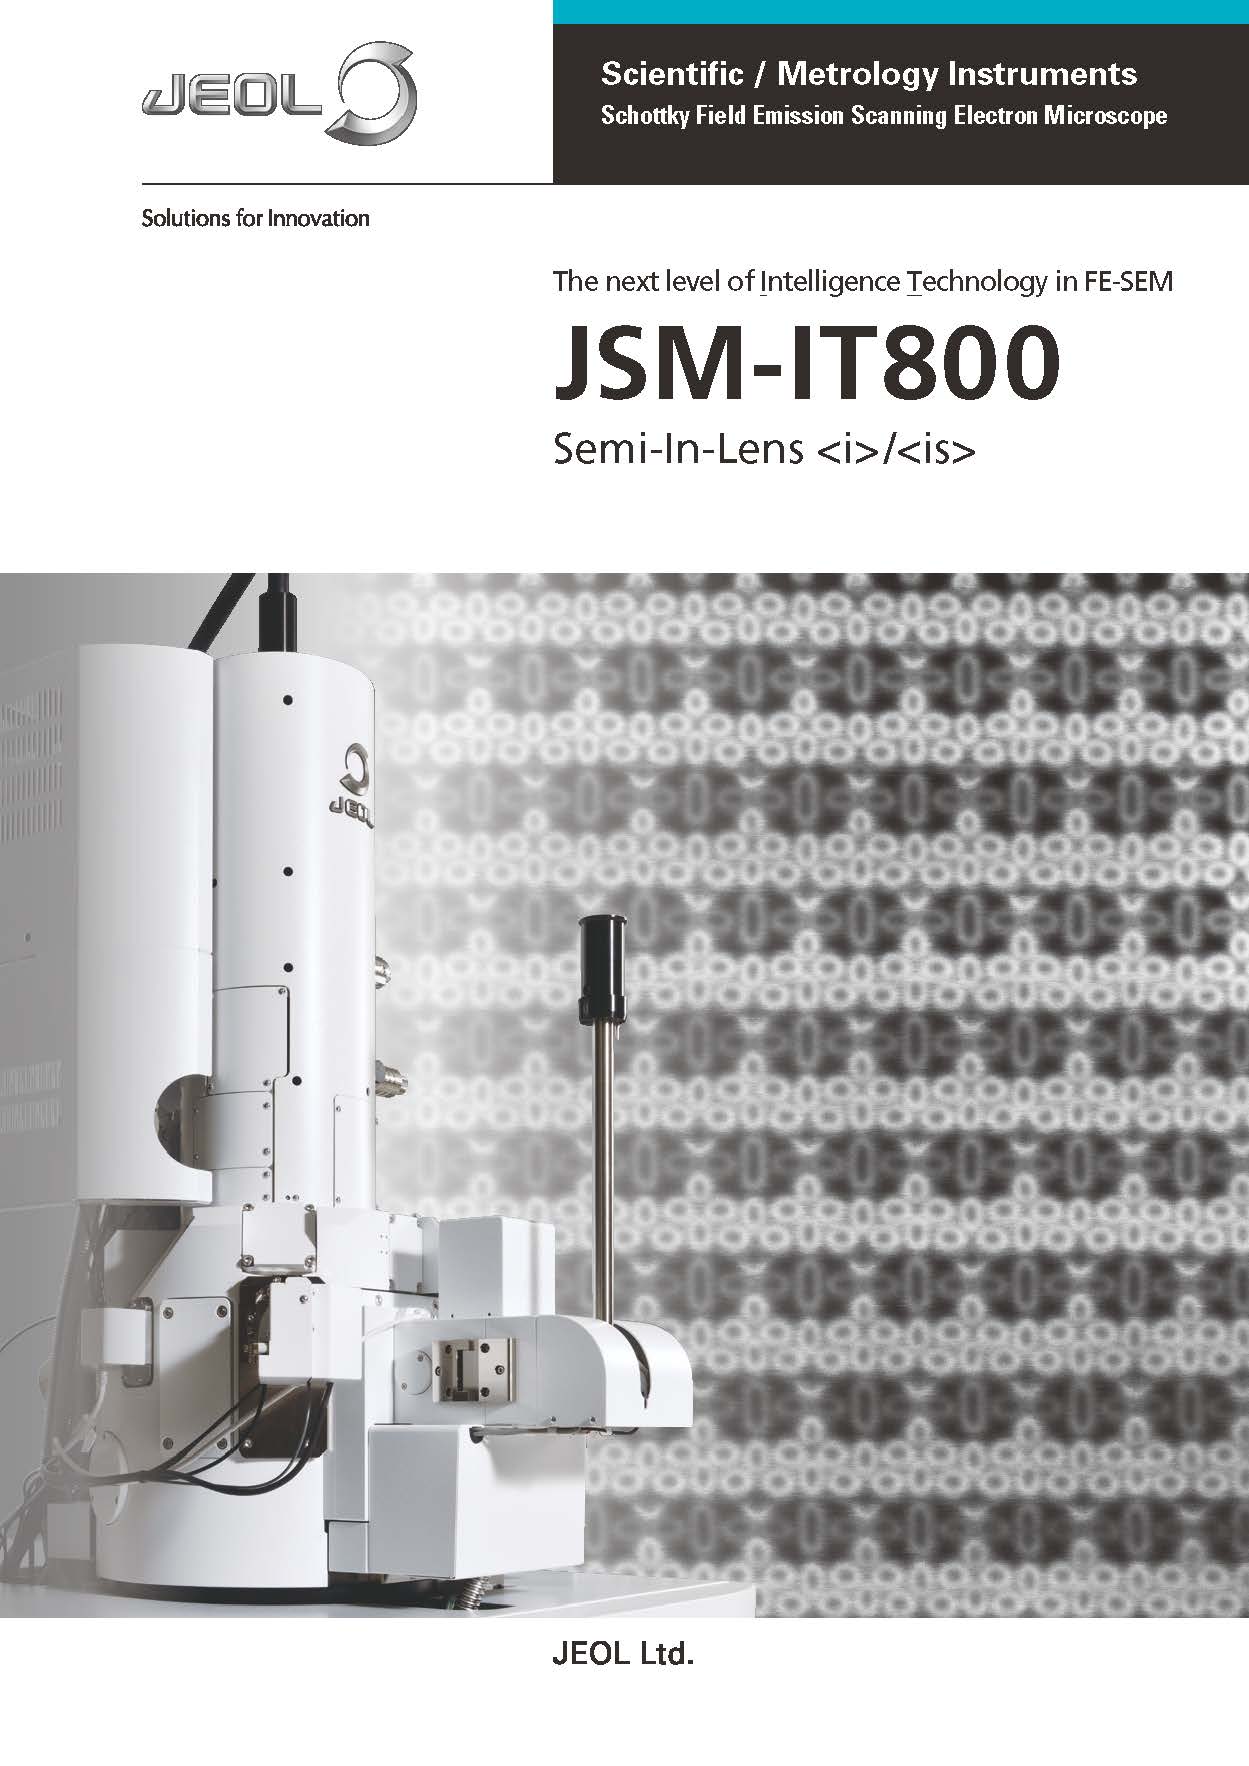 JSM-IT800(i)/(is) Schottky Field Emission Scanning Electron Microscope